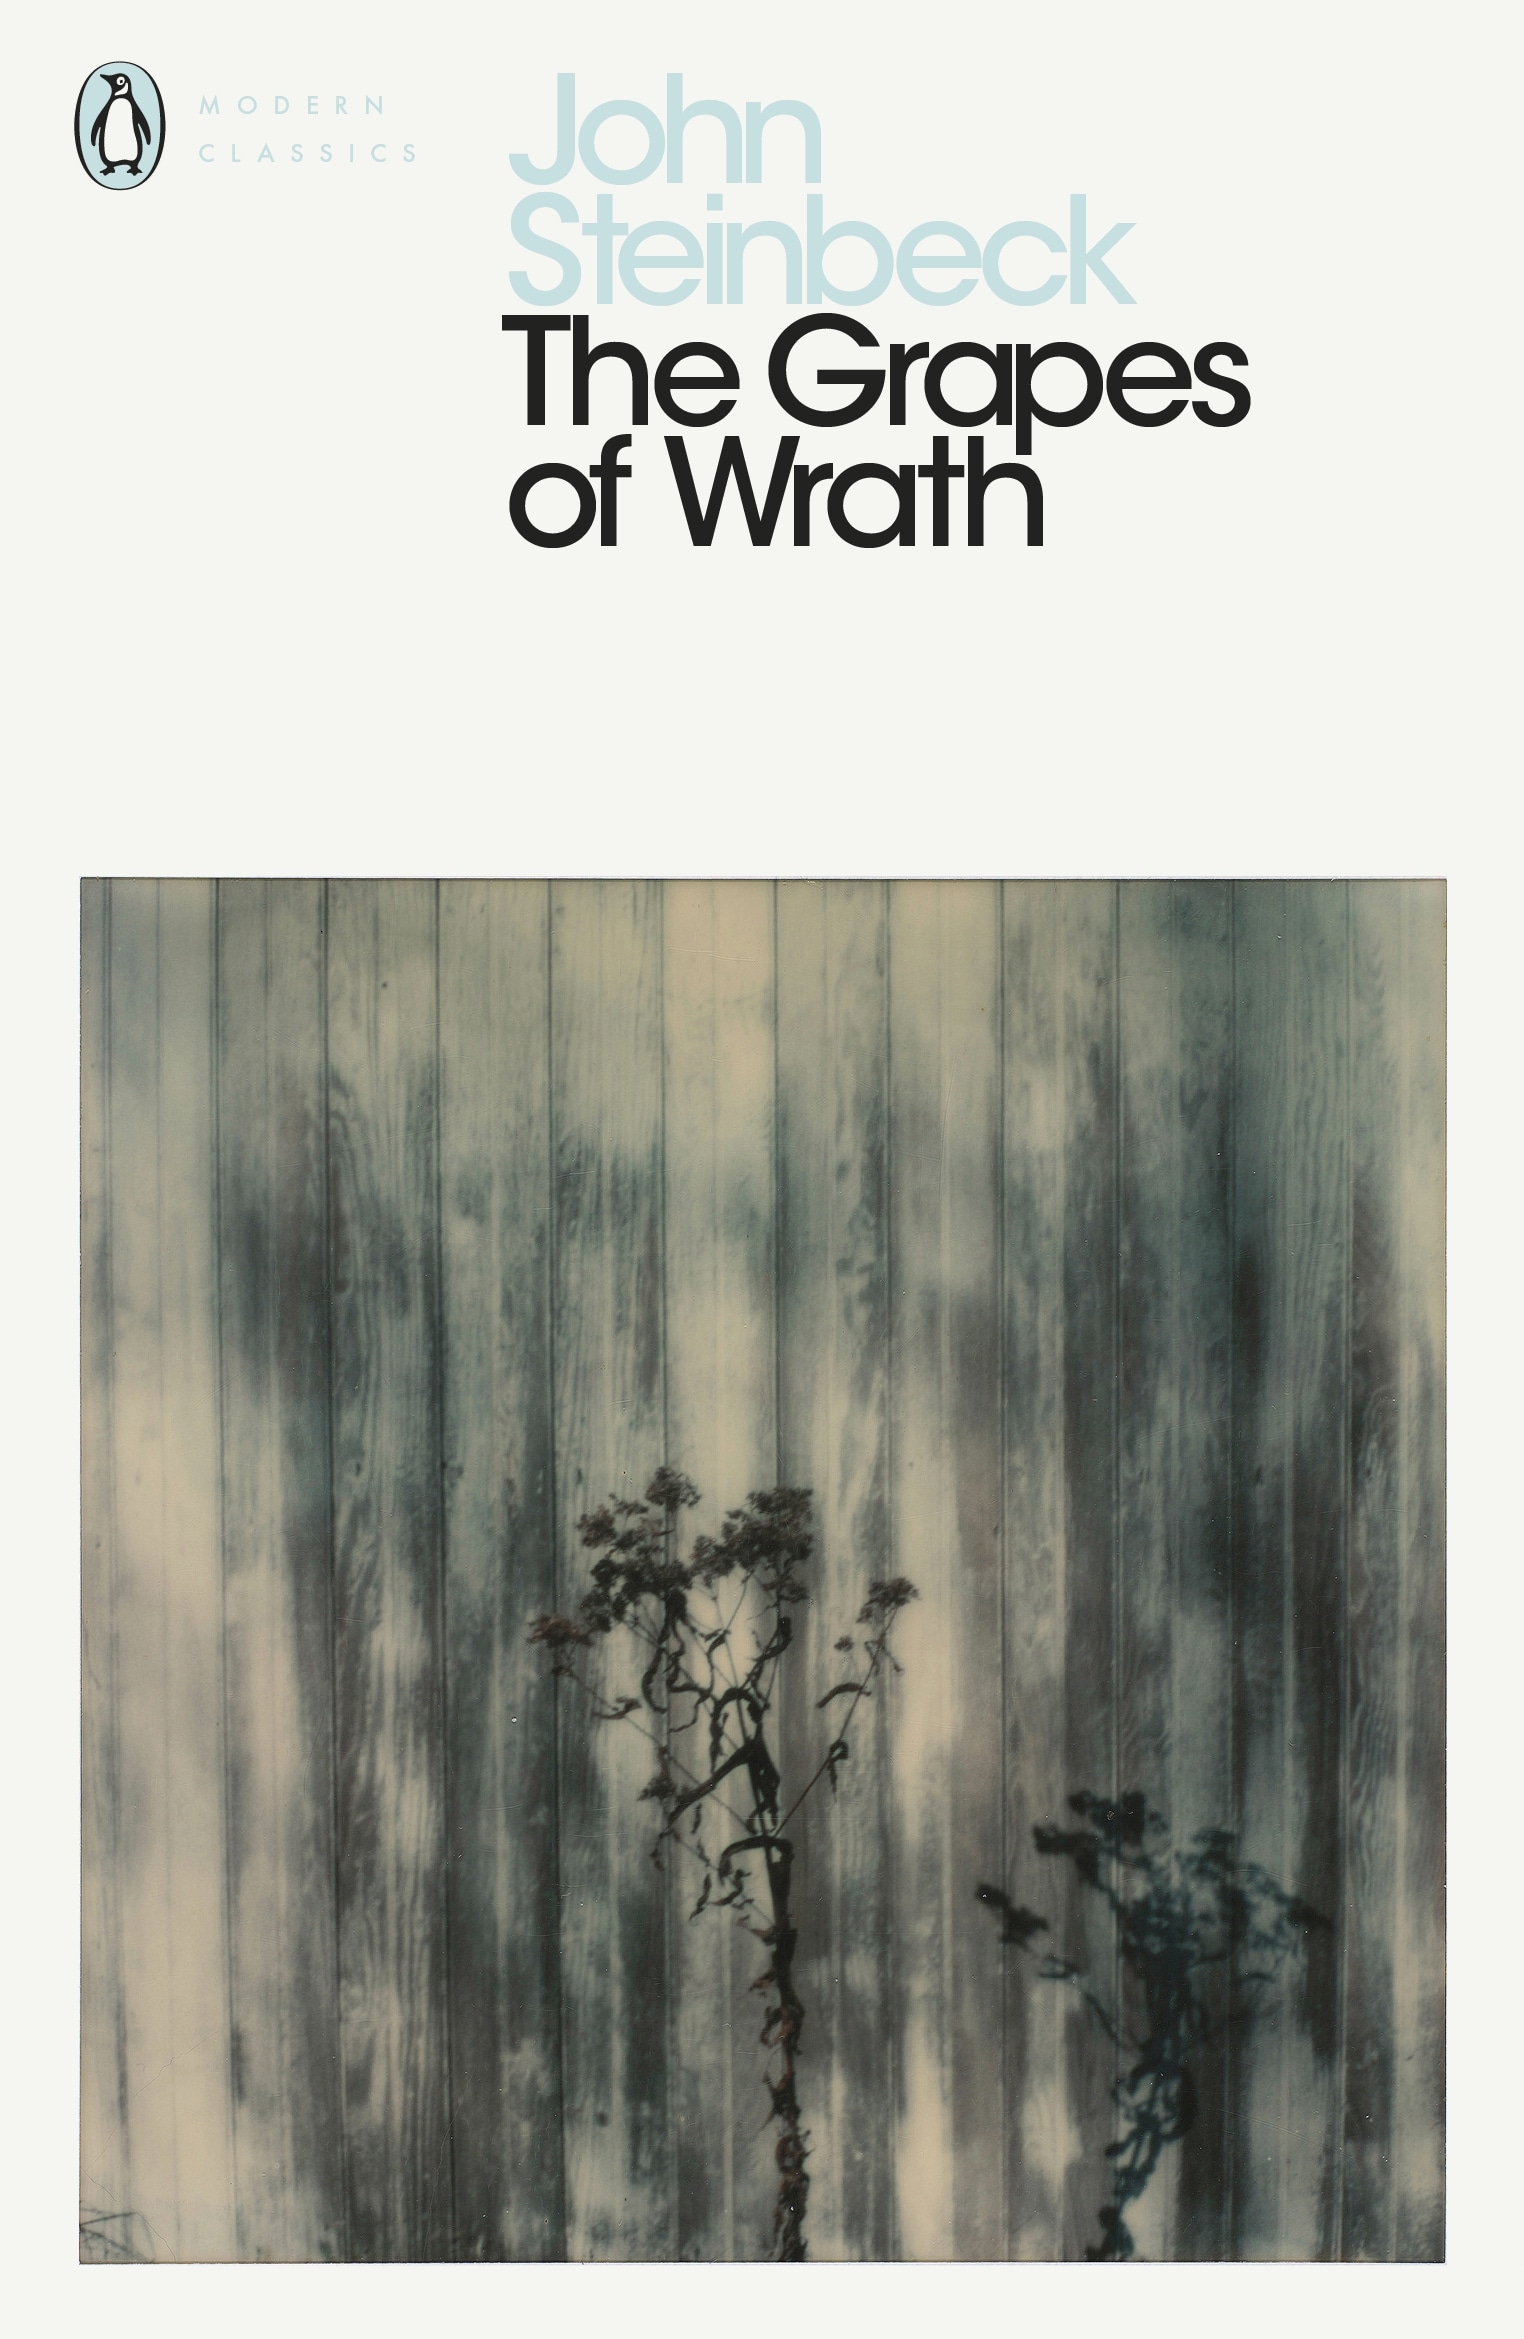 Book “The Grapes of Wrath” by John Steinbeck, Robert DeMott — September 7, 2000